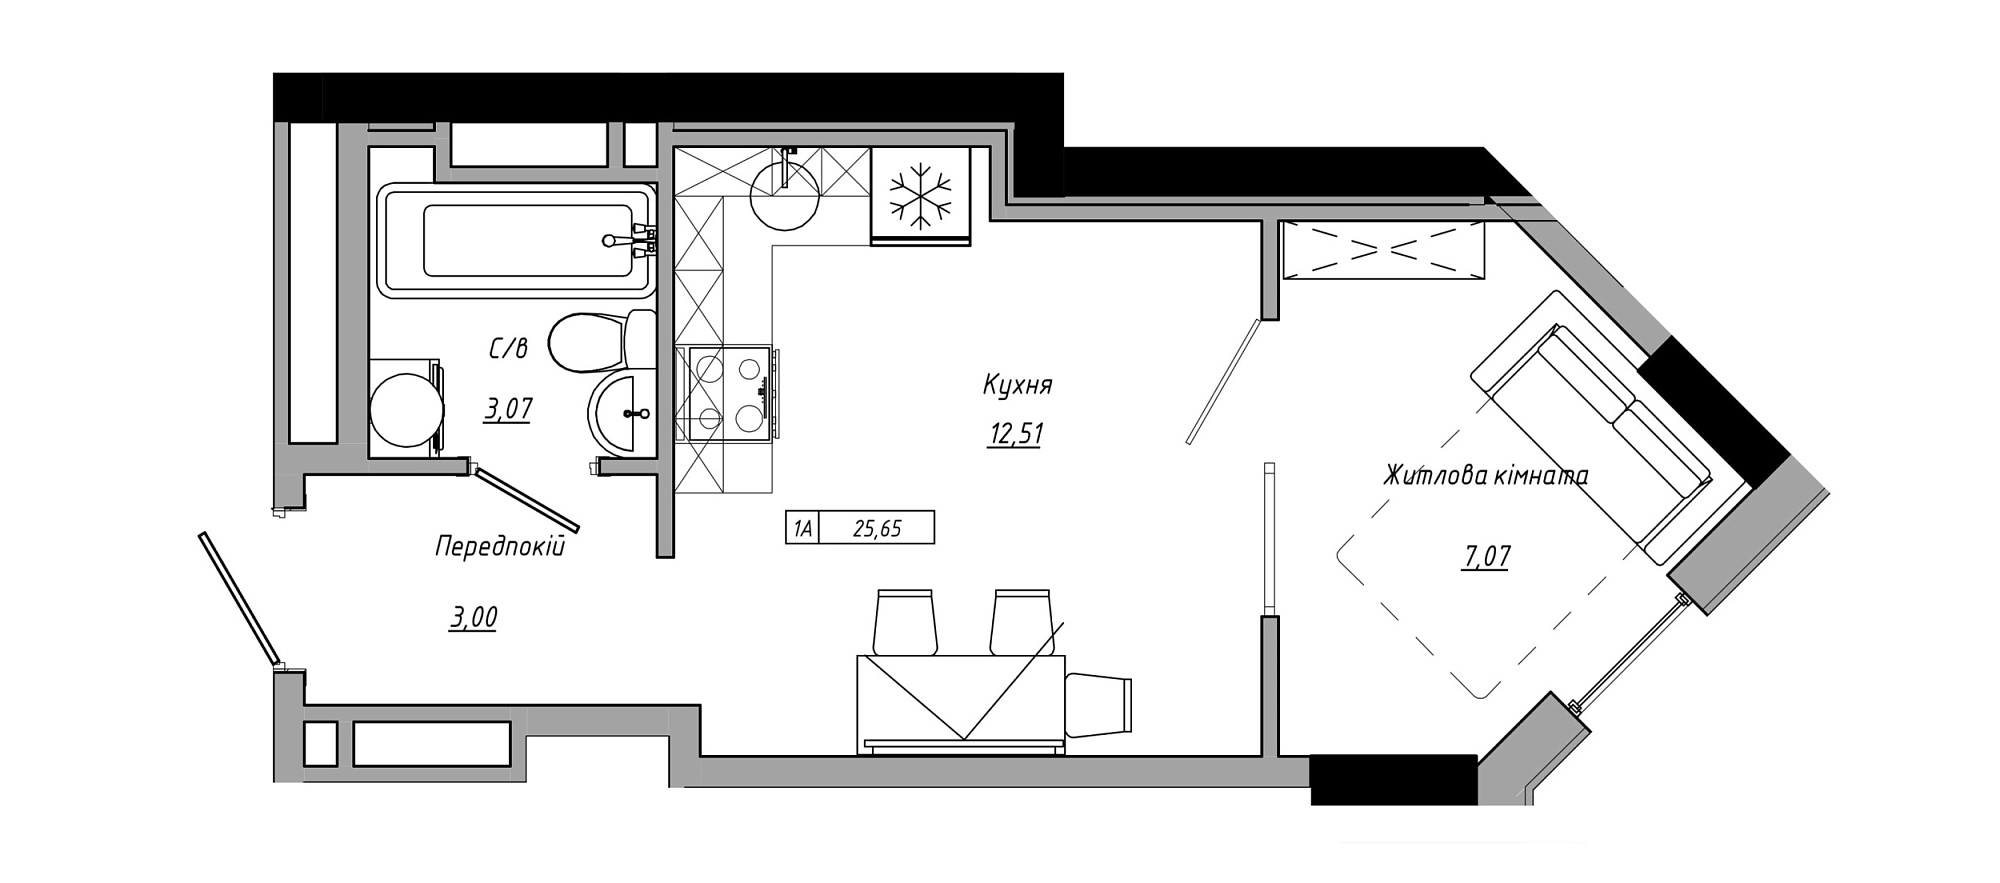 Планировка 1-к квартира площей 25.65м2, AB-21-07/00001.